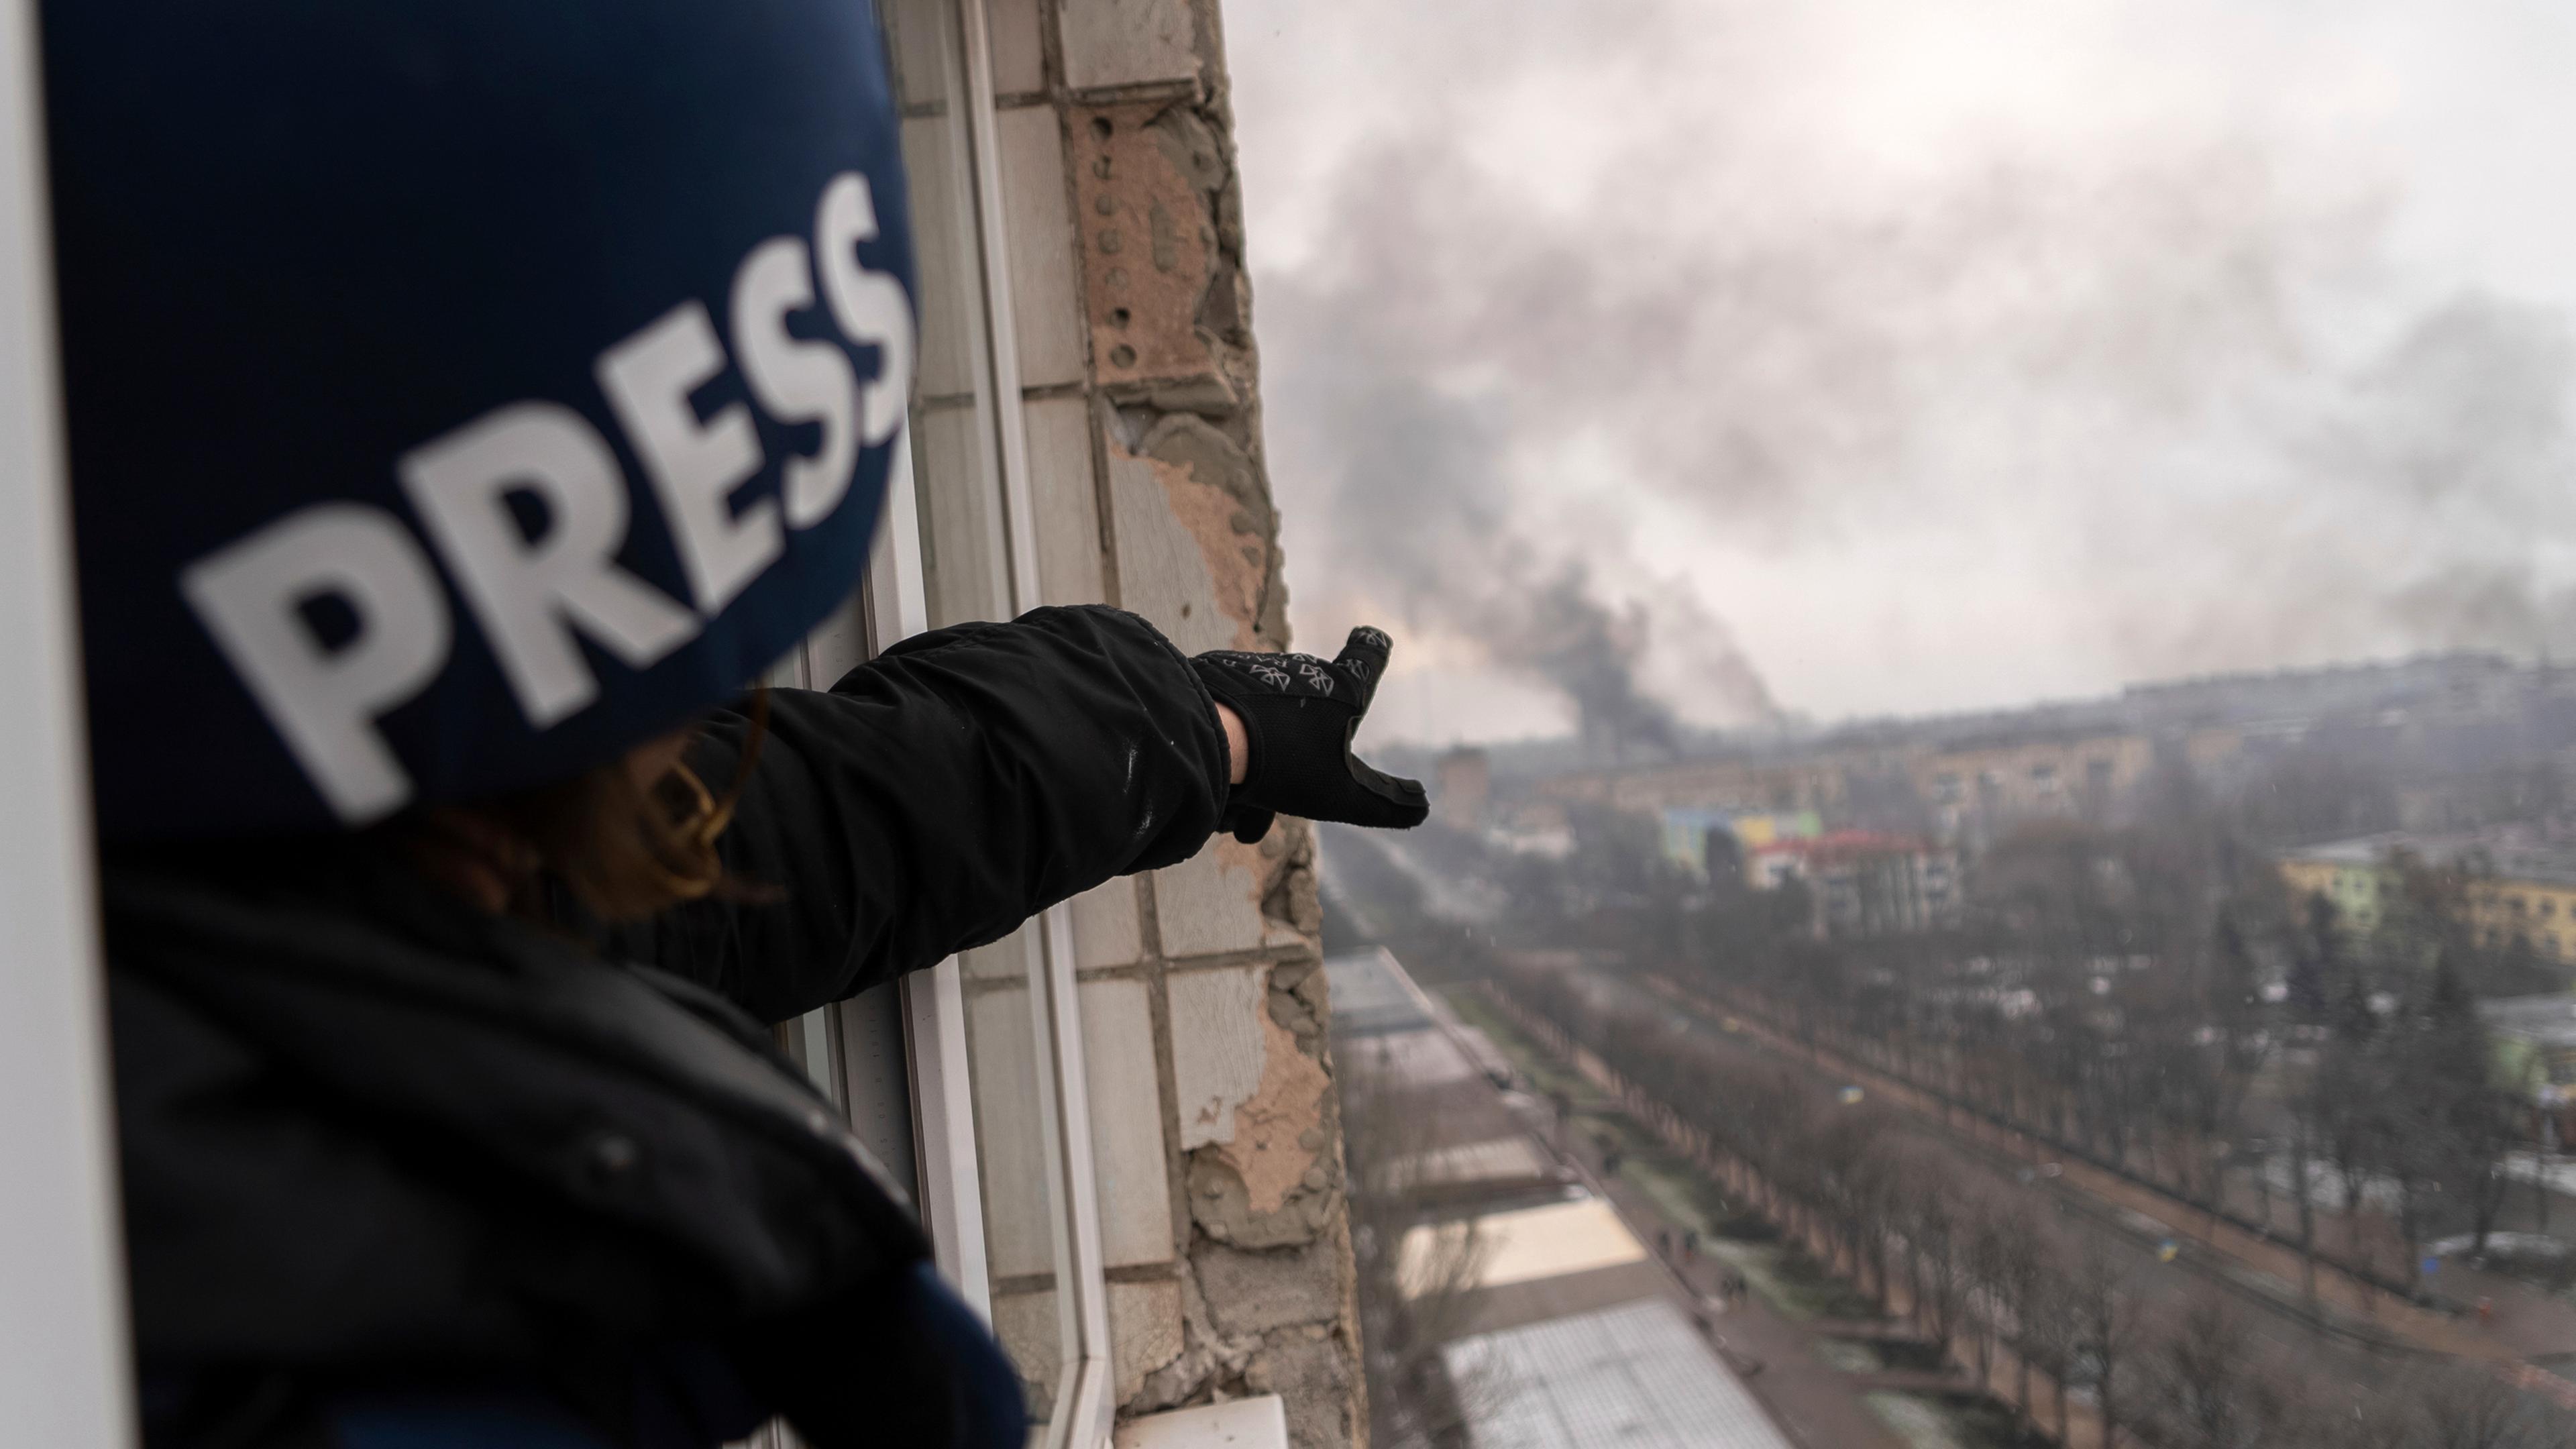 Der Fotograf Evgeniy Maloletka, der einen Helm mit der Aufschrift "Press" trägt, zeigt aus dem Fenster eines beschädigten Hochhauses auf Rauchwolken über der Stadt Mariupol.